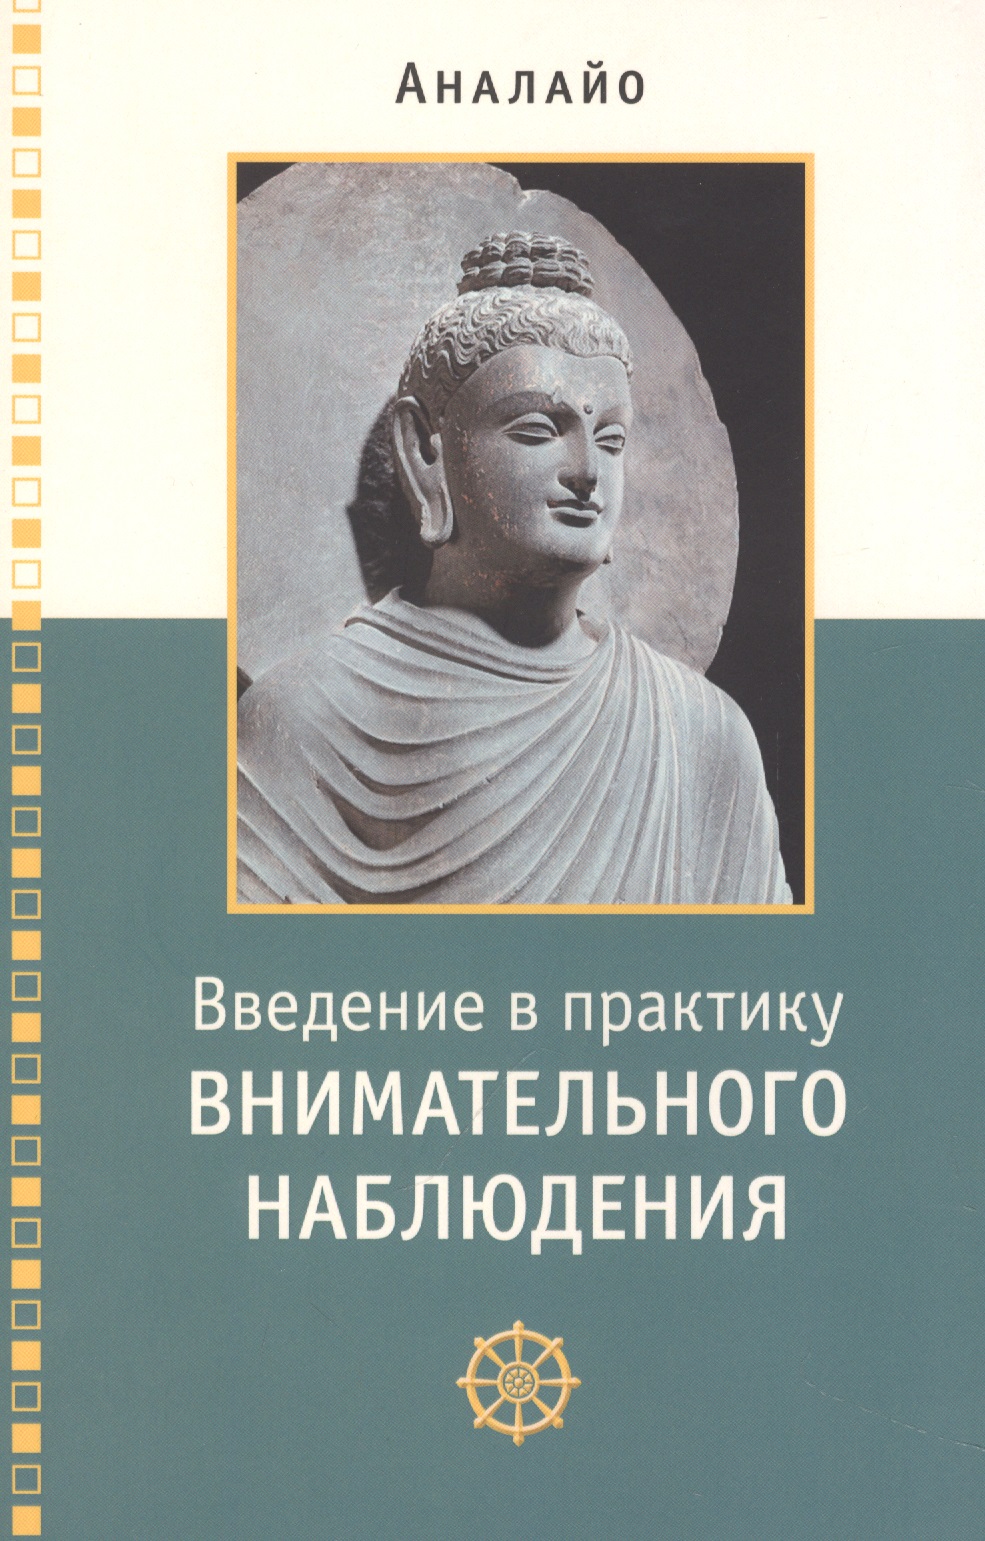 аналайо бхиккху введение в практику внимательного наблюдения буддийское обоснование и практические занятия Введение в практику внимательного наблюдения Буддийское обоснование и практические занятия